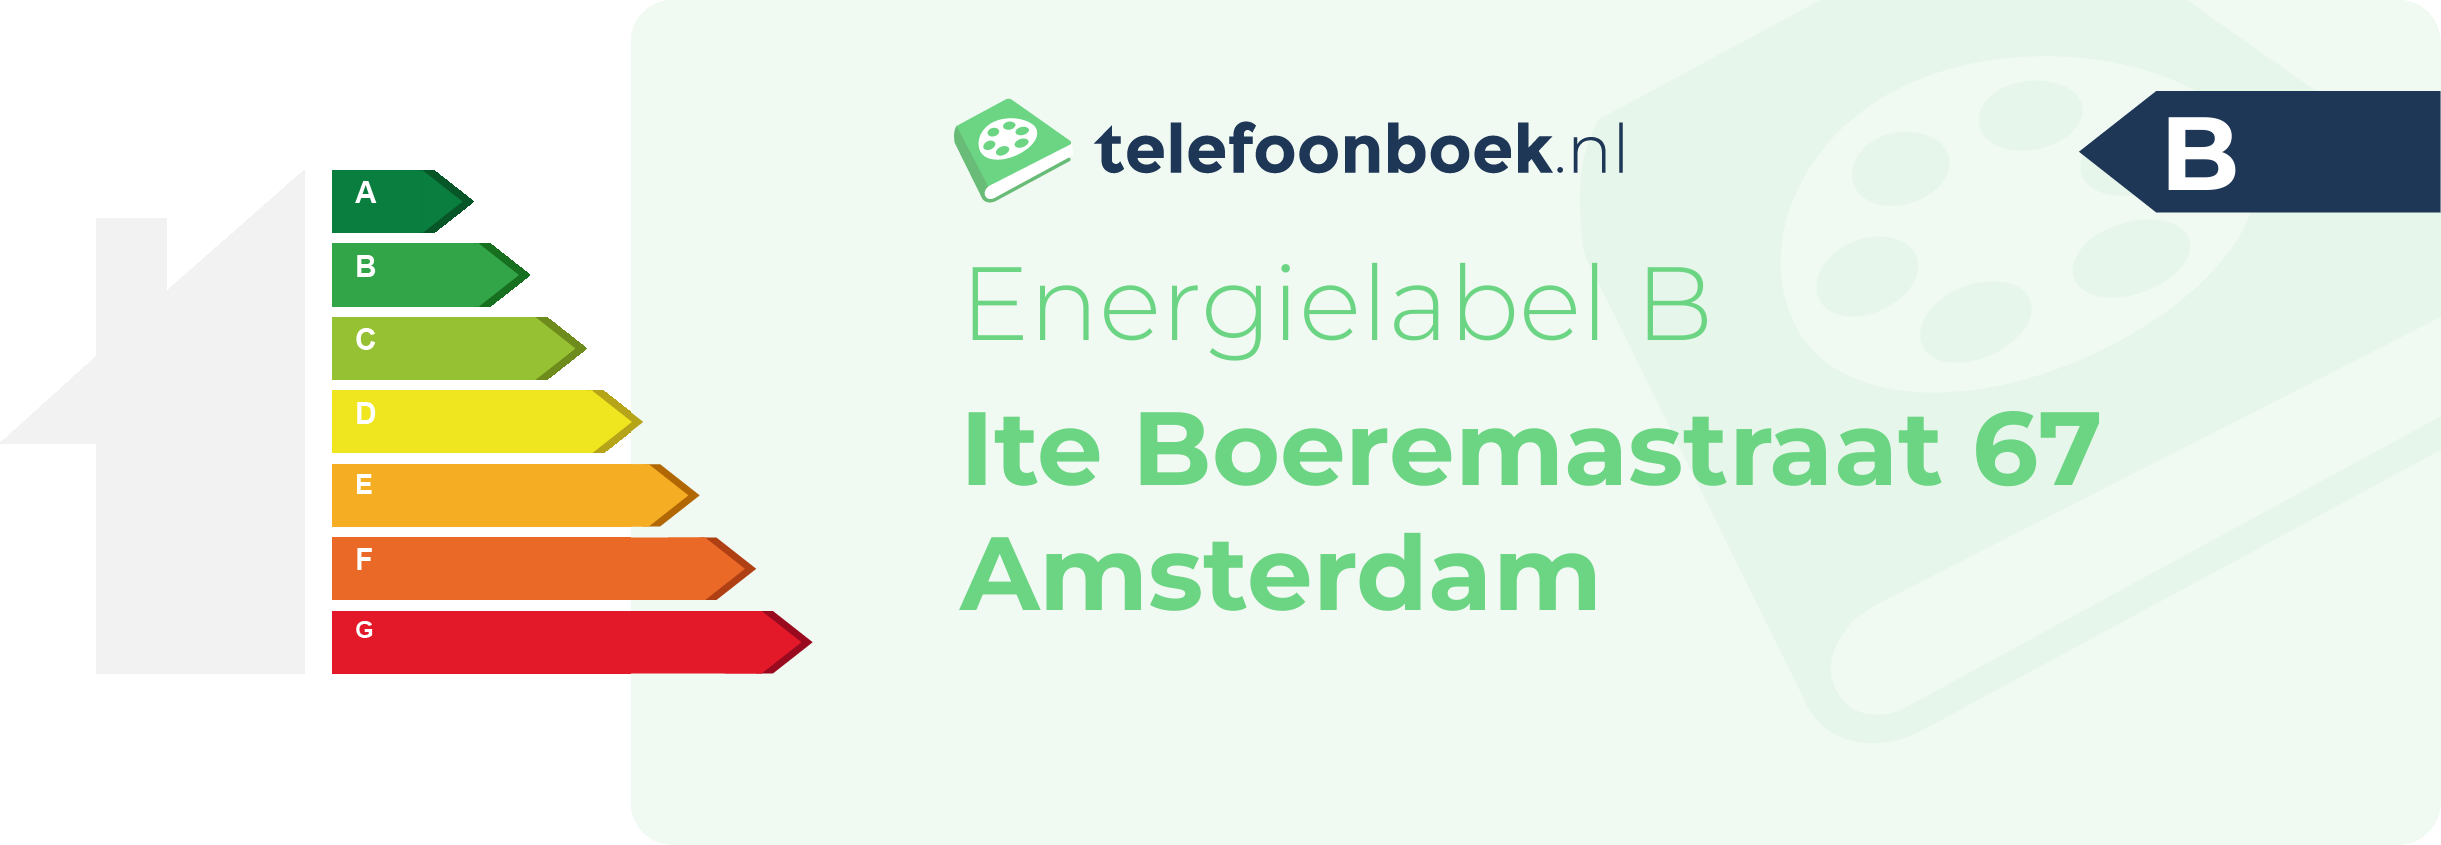 Energielabel Ite Boeremastraat 67 Amsterdam